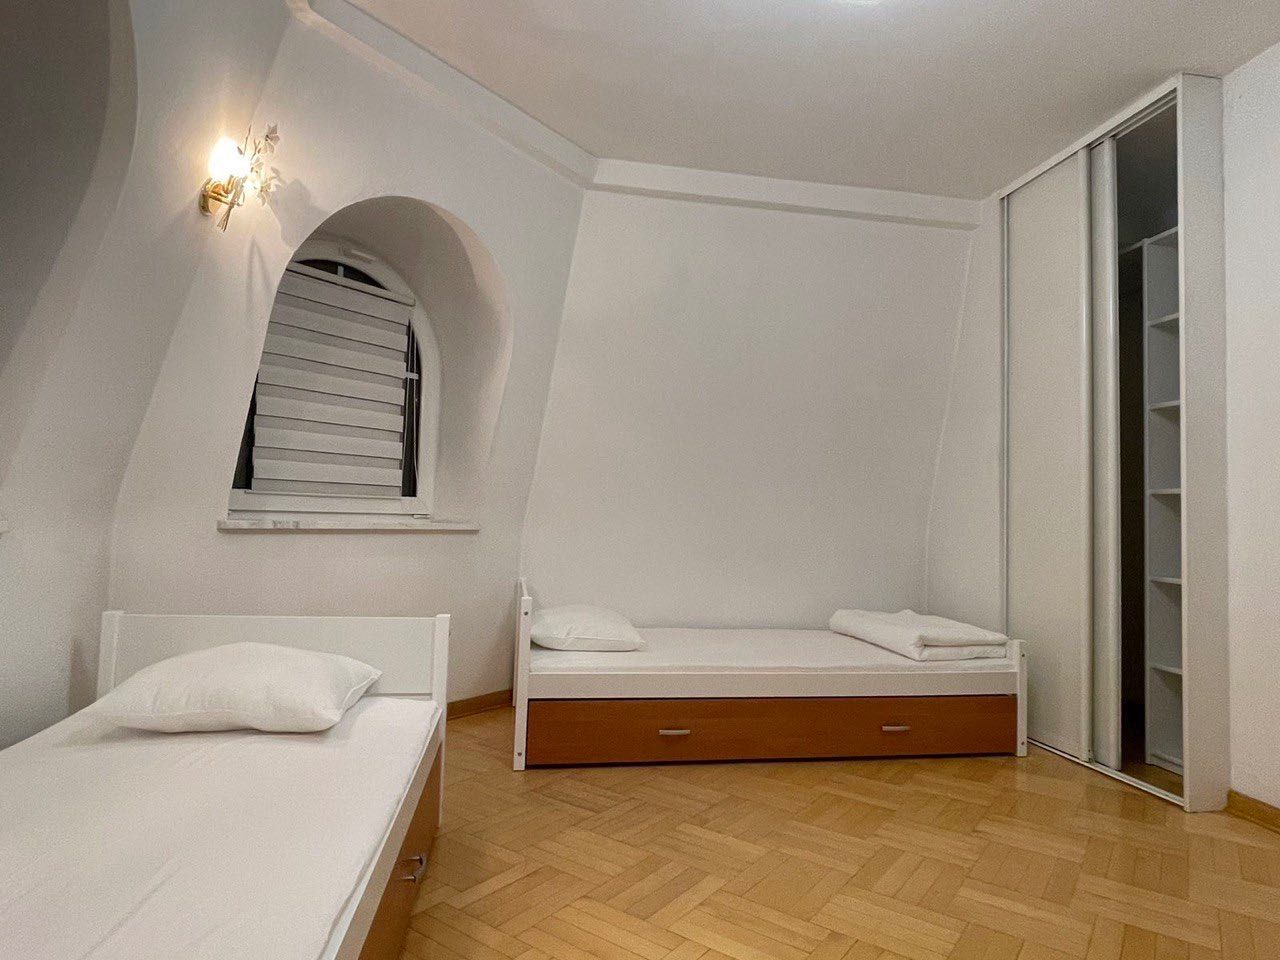 Лучшее Общежитие Варшавы Хостел Hostel Pokoje Район Мокотув Sadyba